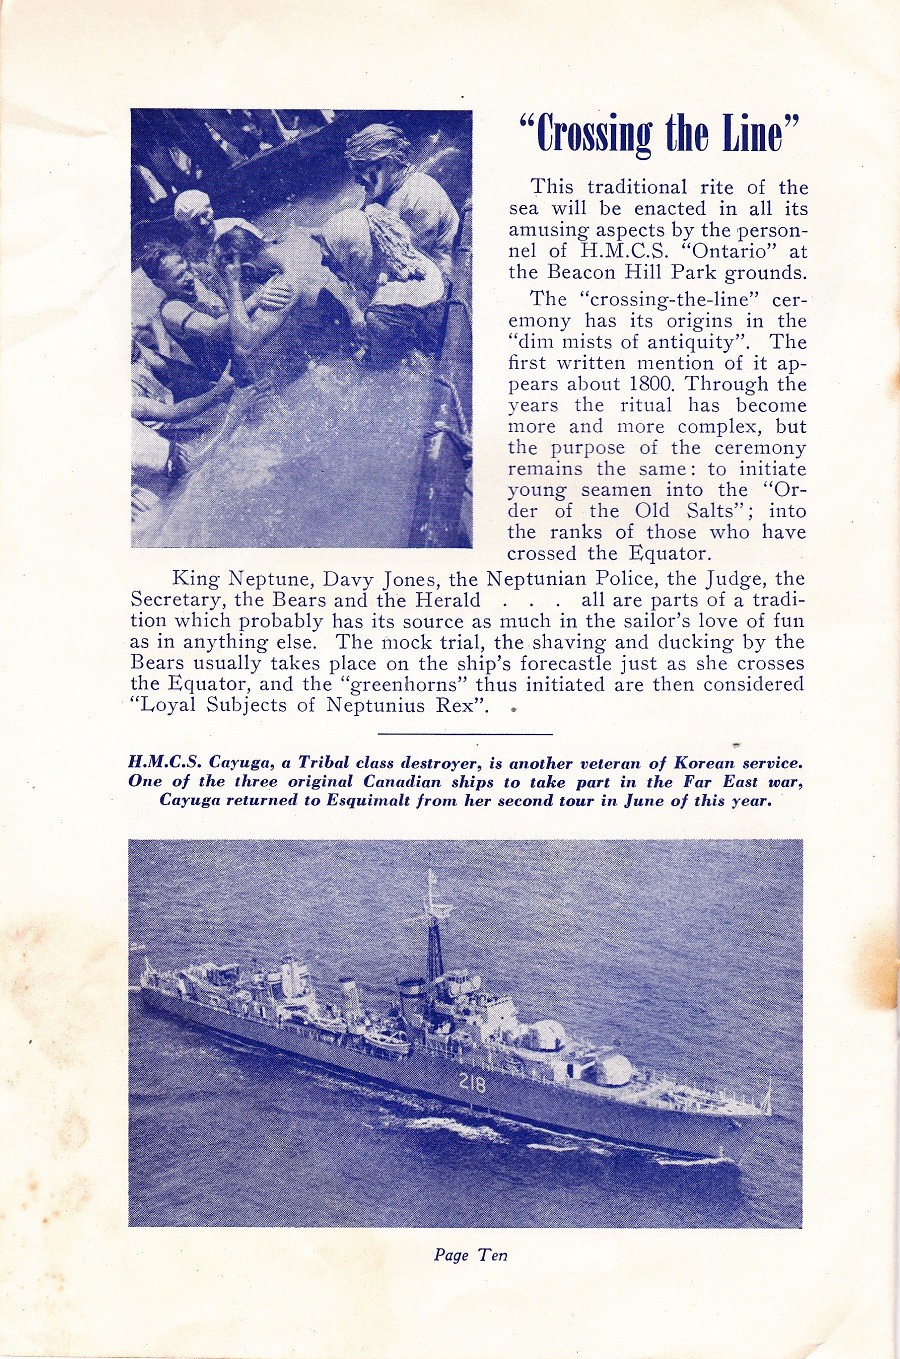 RCN NAVY DAYS 26 July 1952 - Page 10